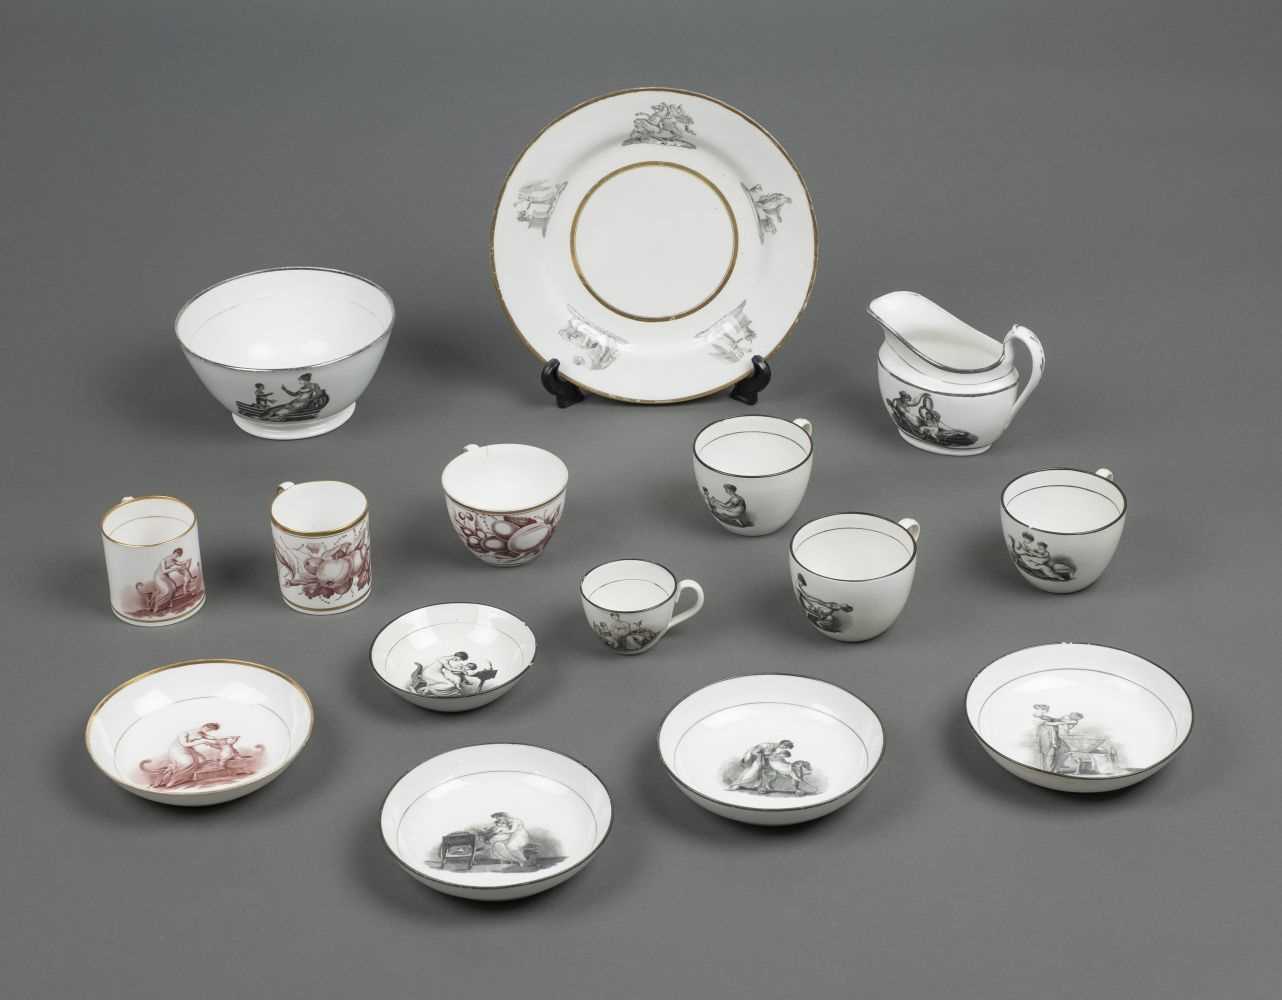 Lot 26 - Tea wares. A collection of English porcelain bat printed tea wares